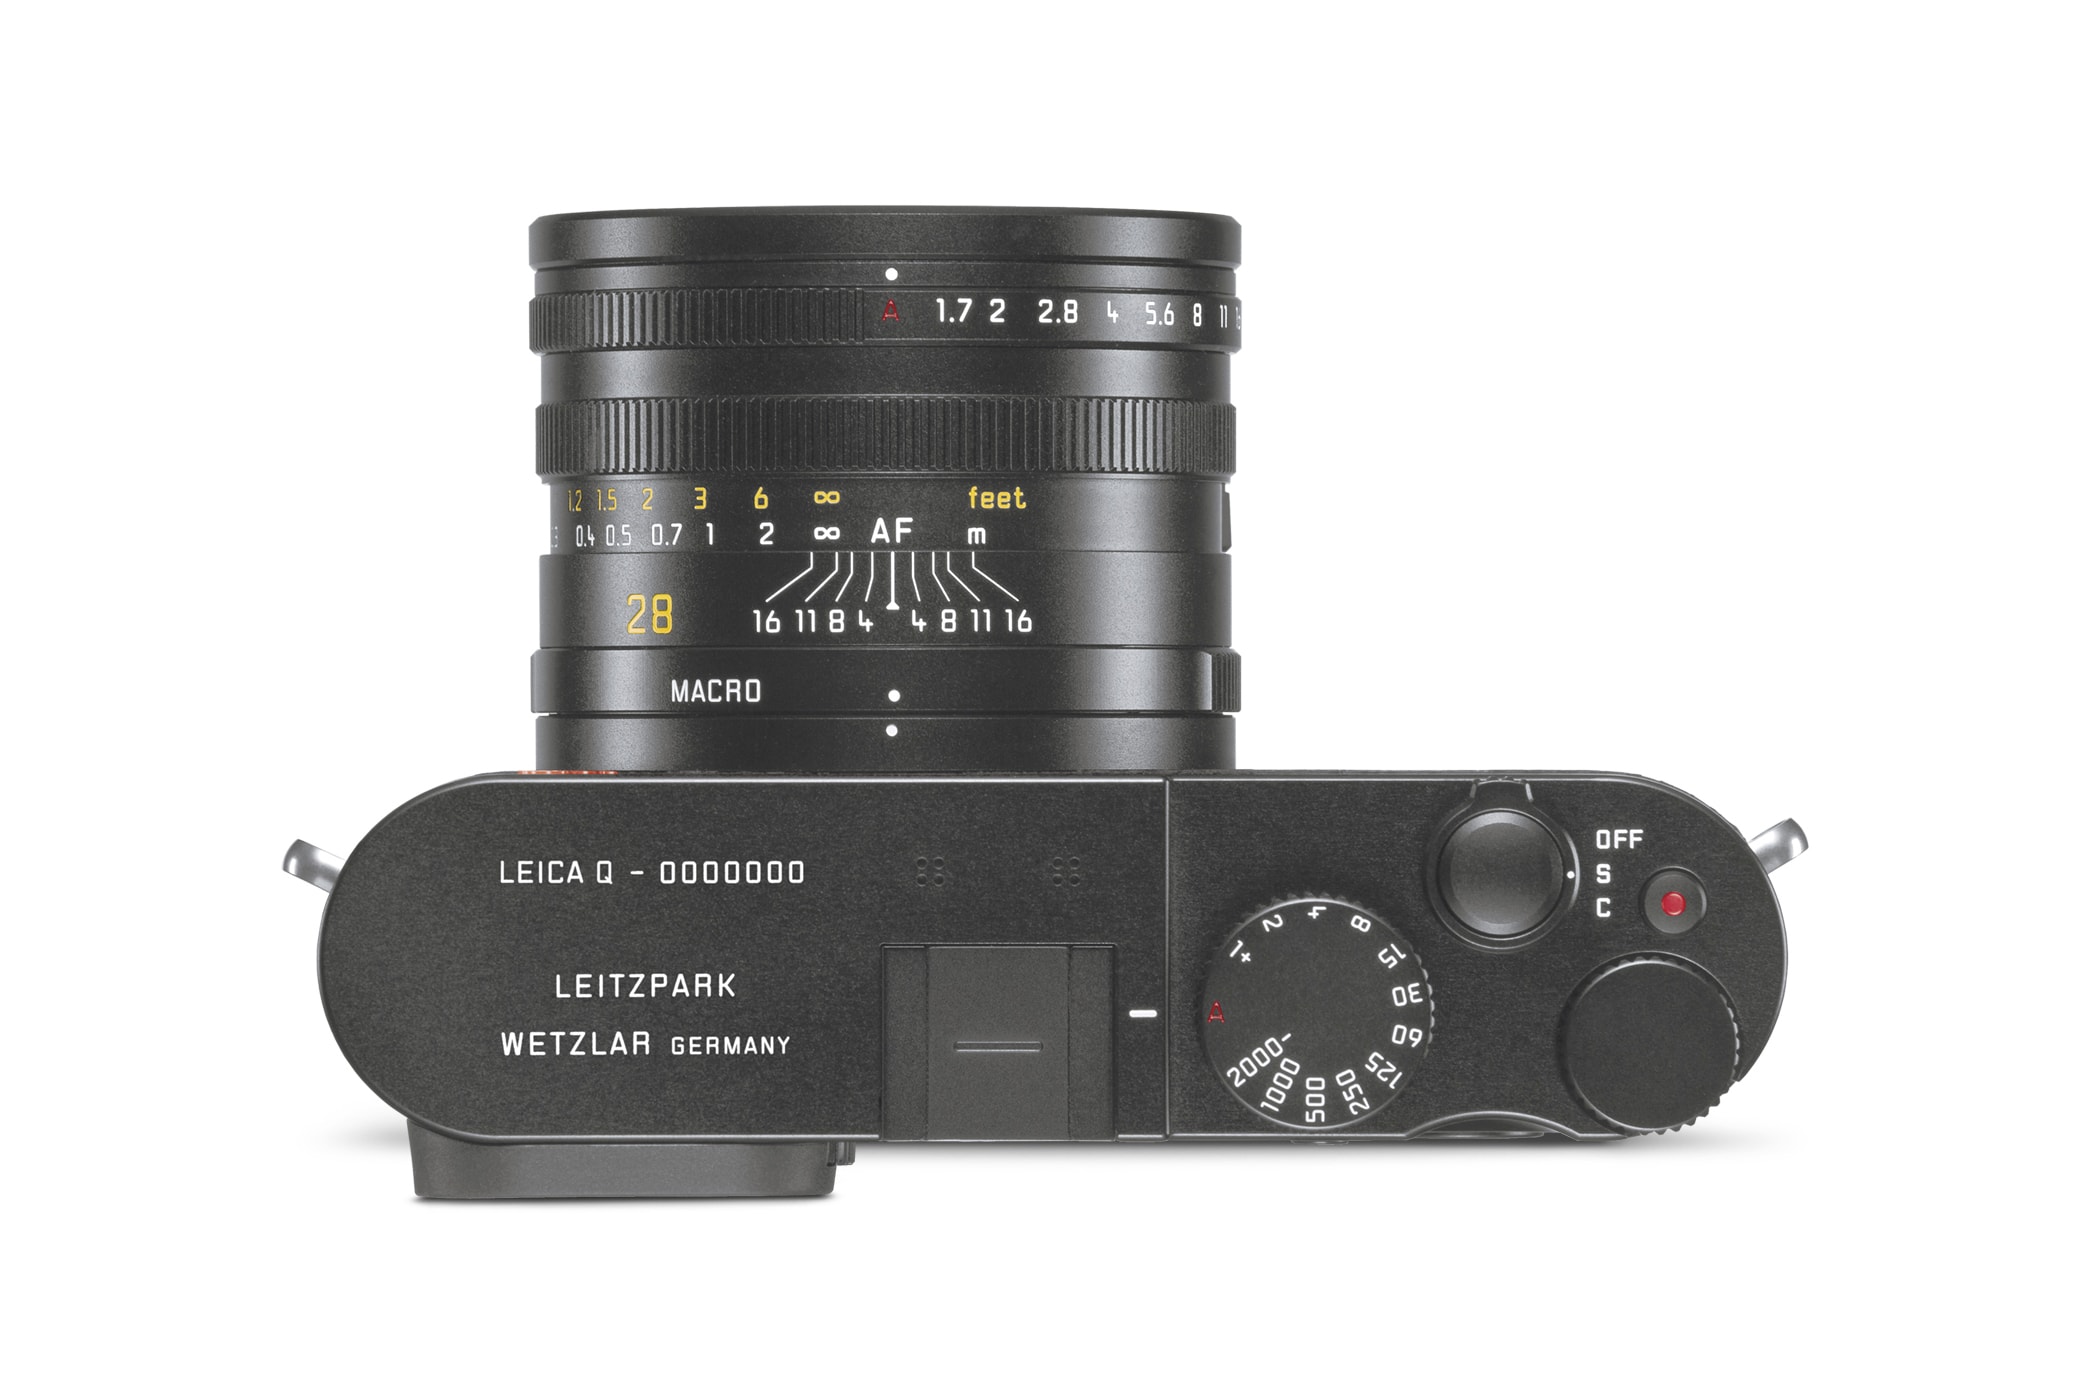 Leica 為品牌體驗中心 Leitz Park 打造全新限定相機系列